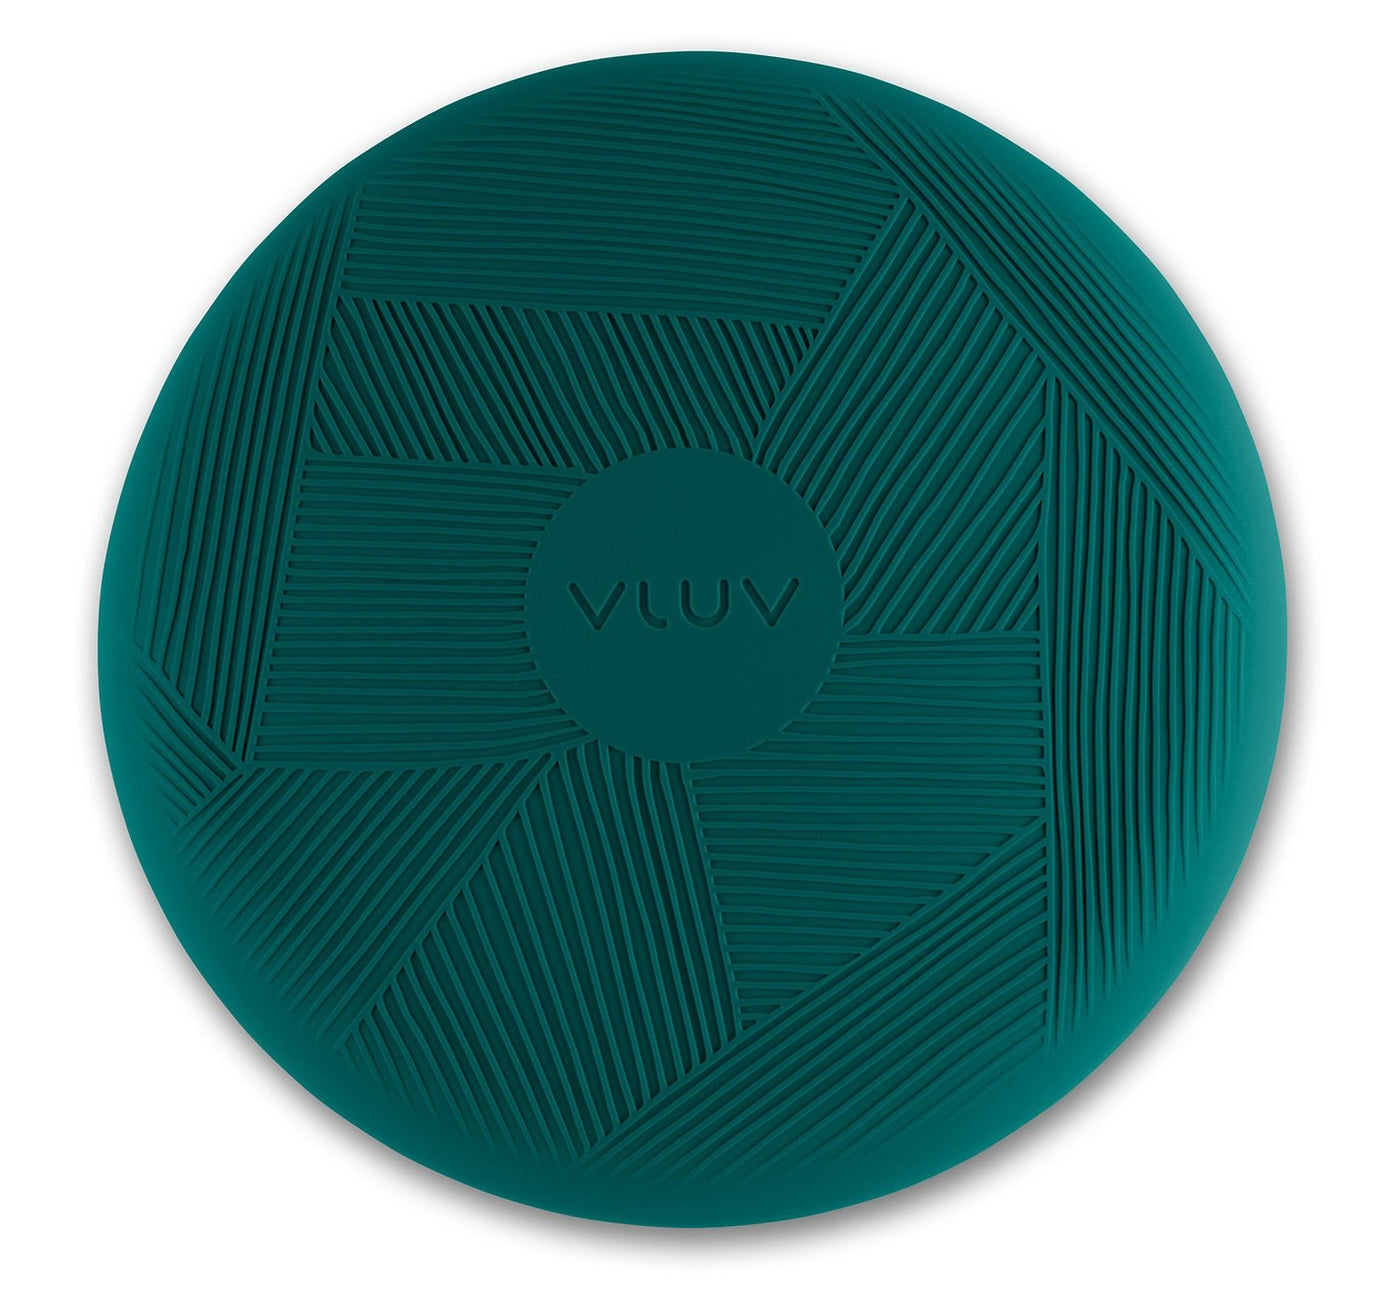 Vluv - VLUV PED Balancekissen 36cm in 3 Farben - Grün - Blau - 123HomeOffice